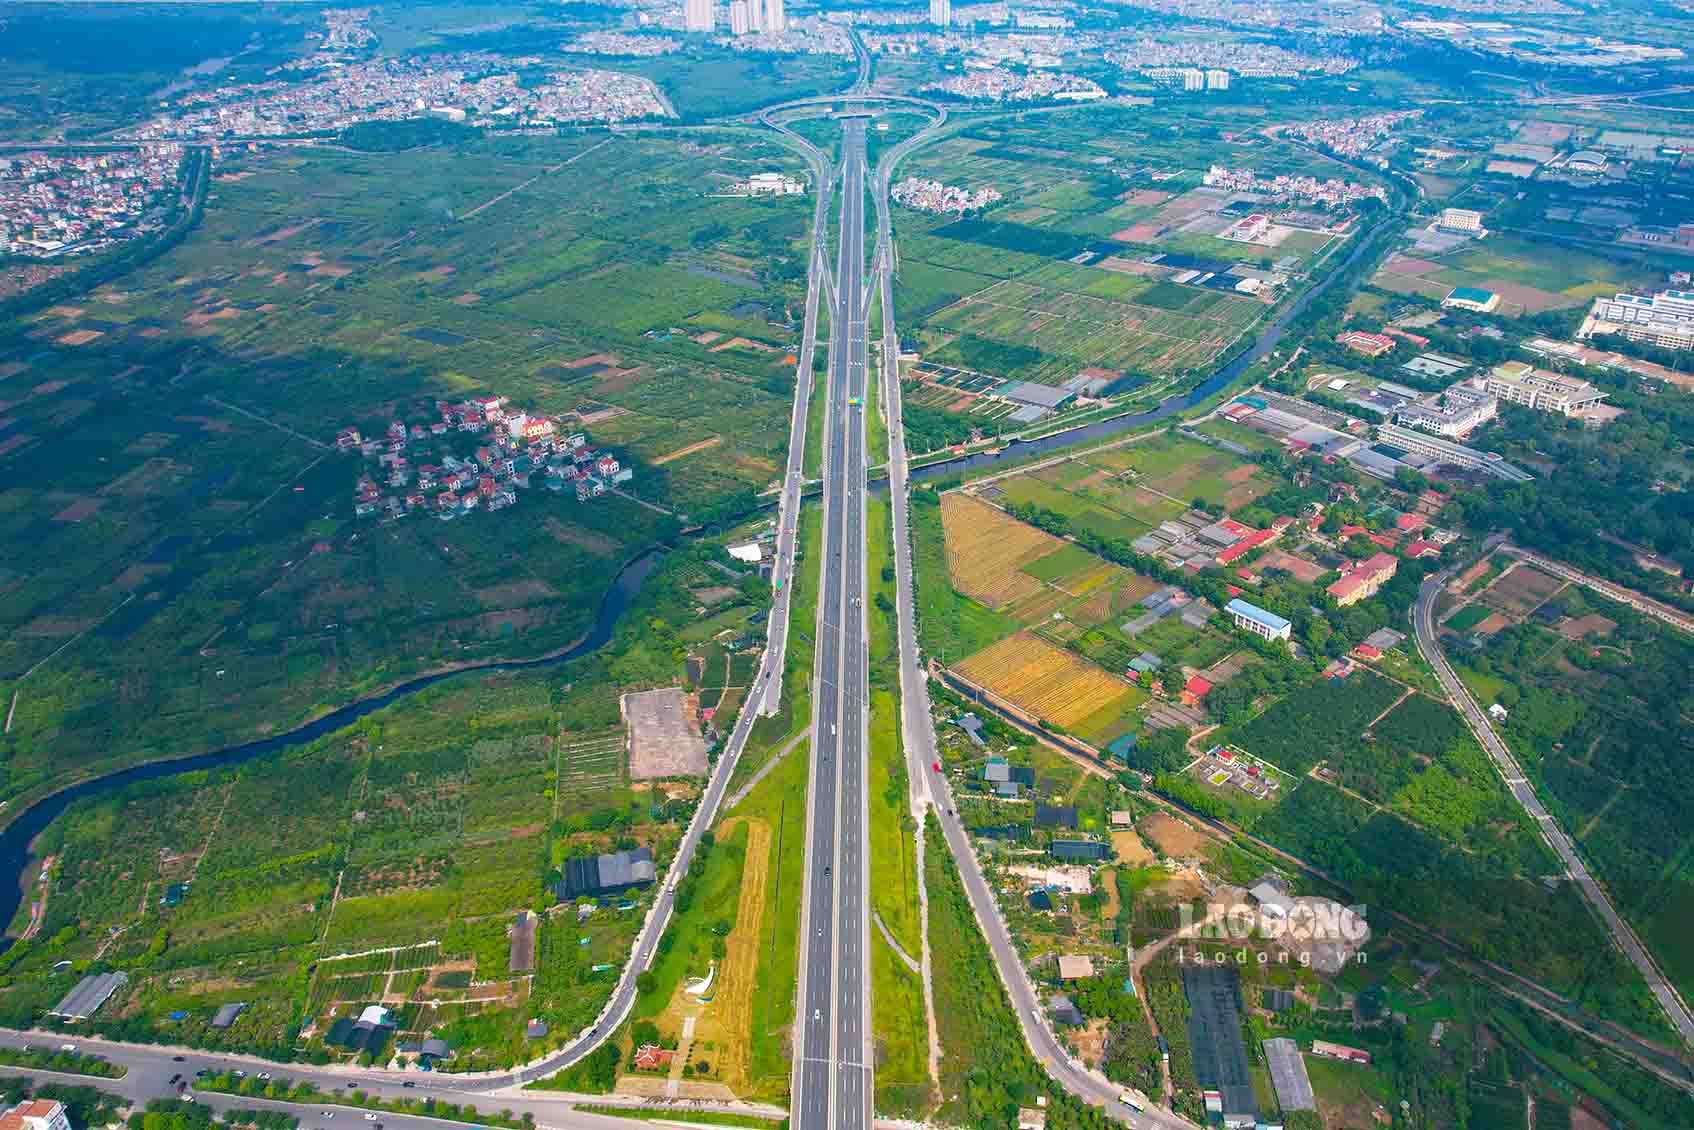 Với lợi thế nằm ở cửa ngõ phía đông thành phố Hà Nội, có nhiều tuyến đường giao thông huyết mạch đi qua như quốc lộ 1A kết nối Bắc Ninh; quốc lộ 3 mới kết nối Hà Nội, Thái Nguyên; quốc lộ 5B nối với tỉnh Hưng Yên và TP Hải Phòng. 